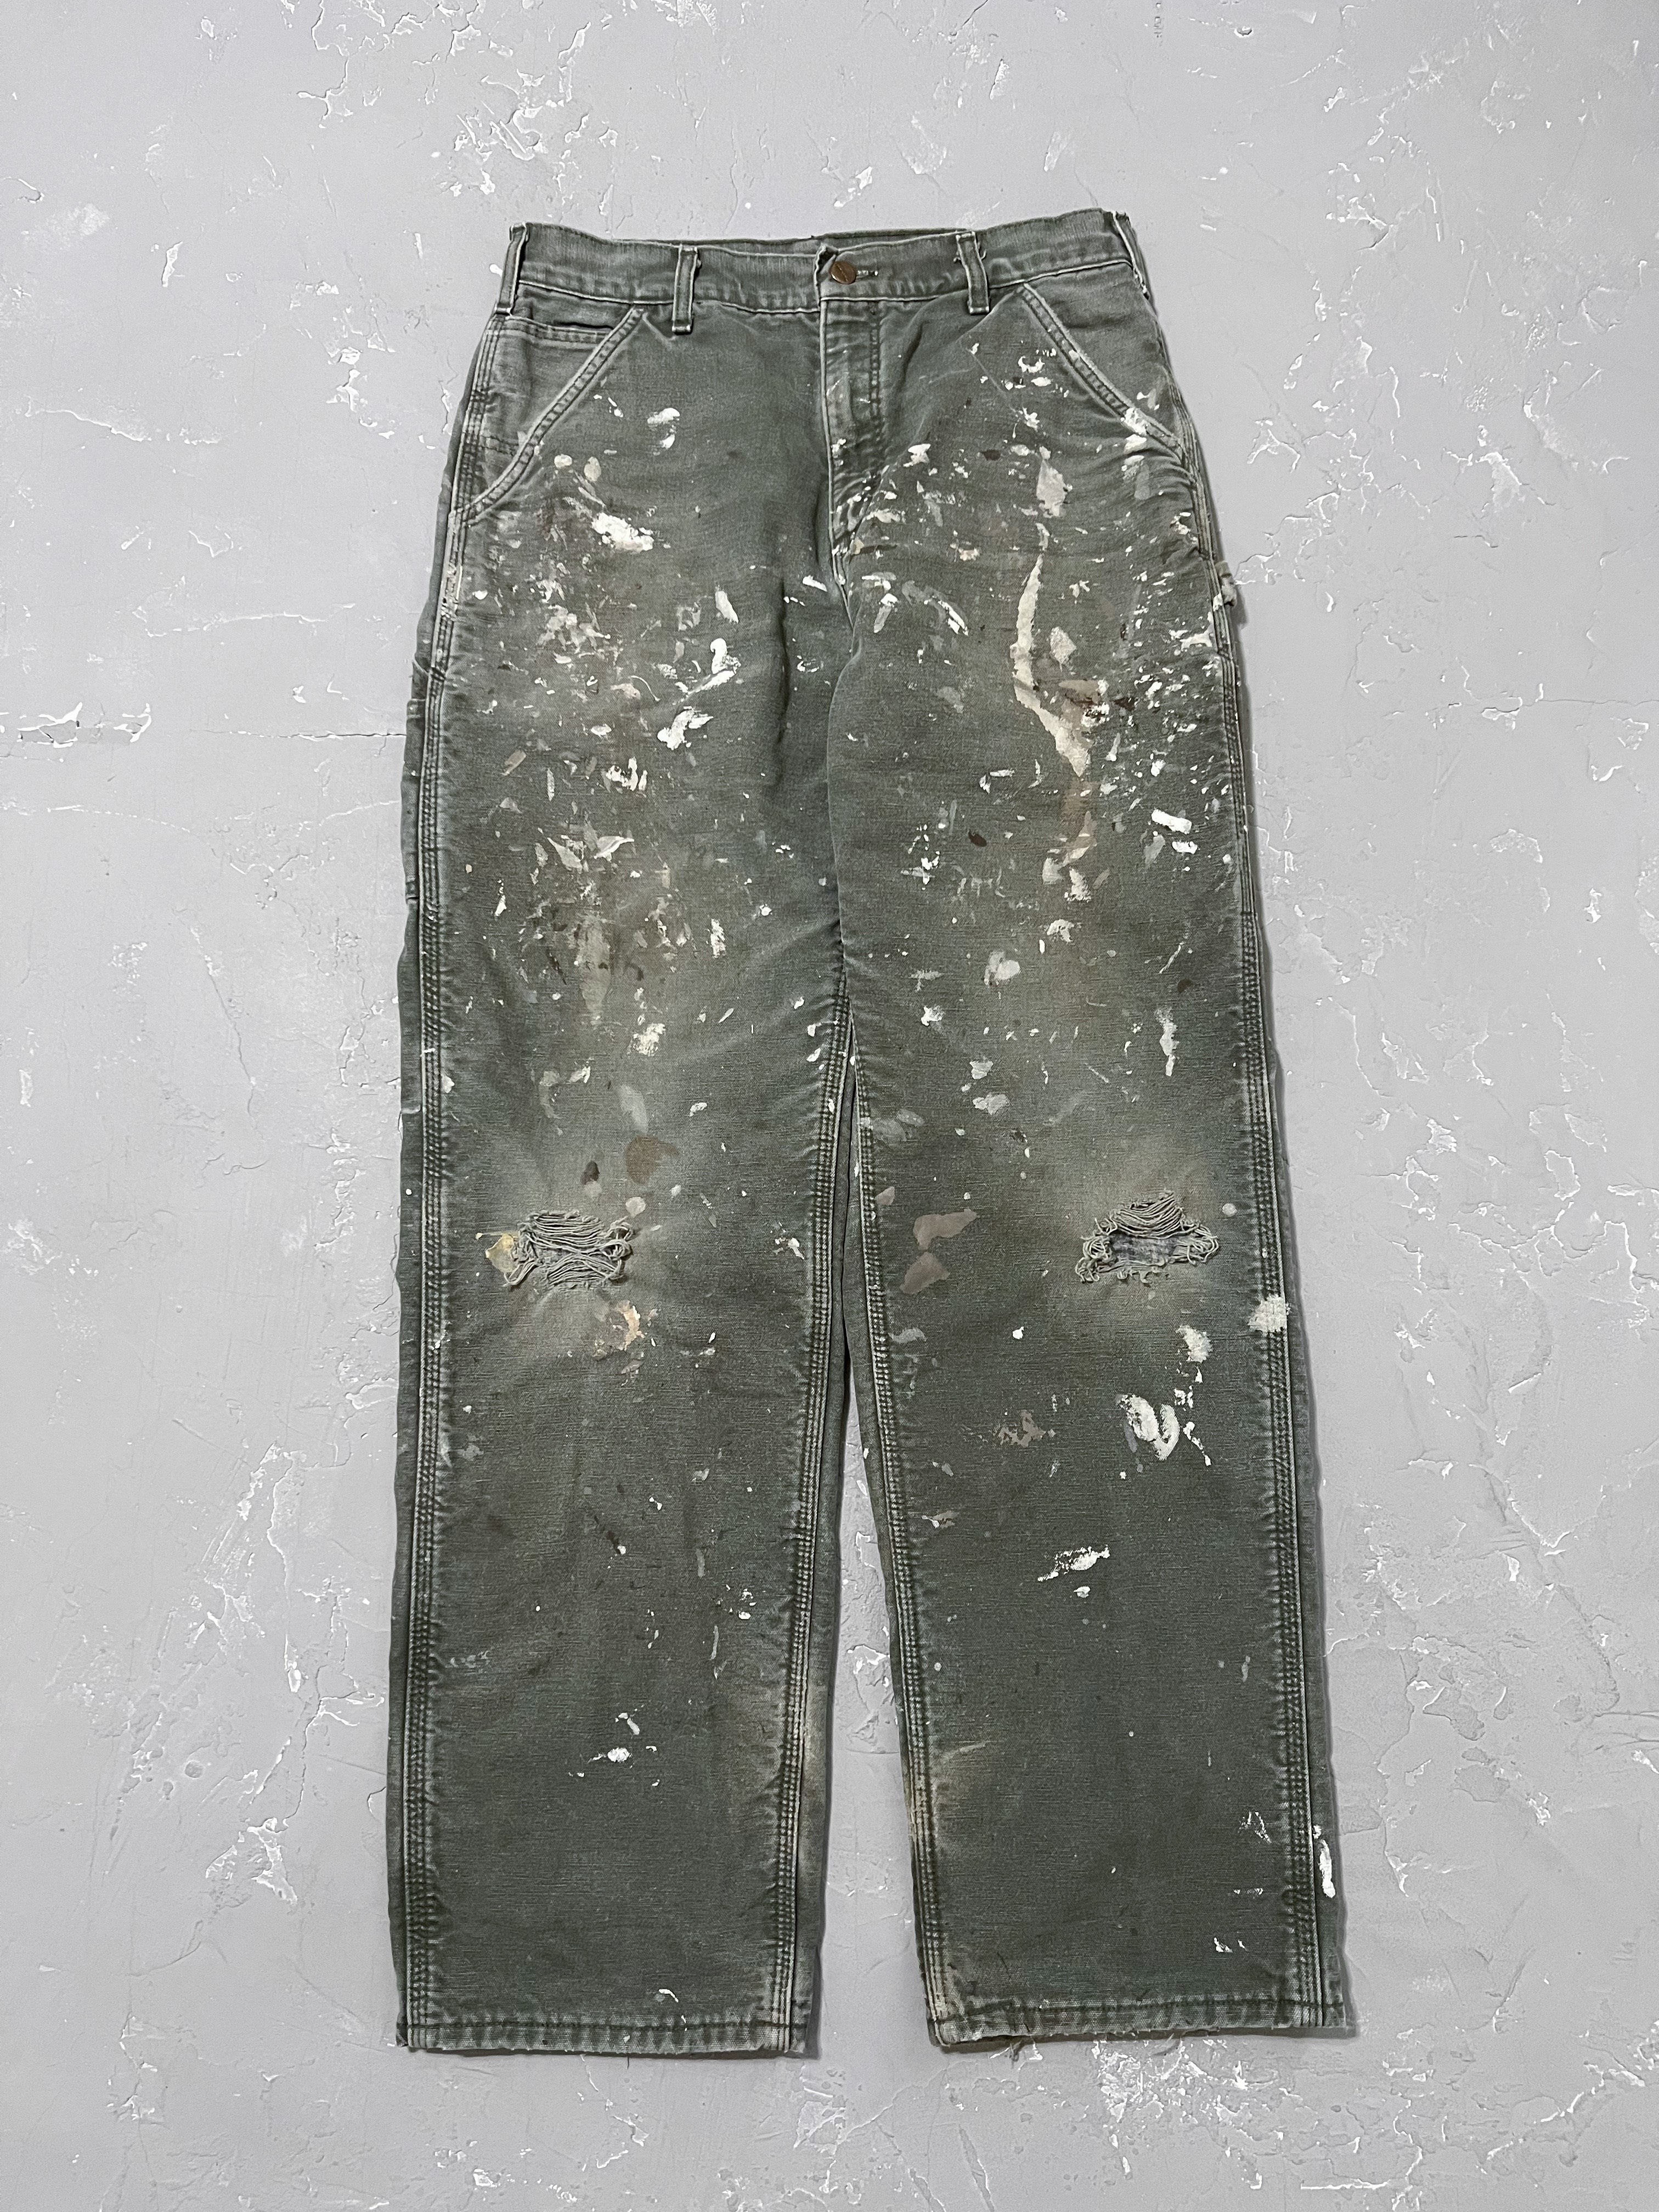 Carhartt Moss Green Painted Carpenter Pants [31 x 32]